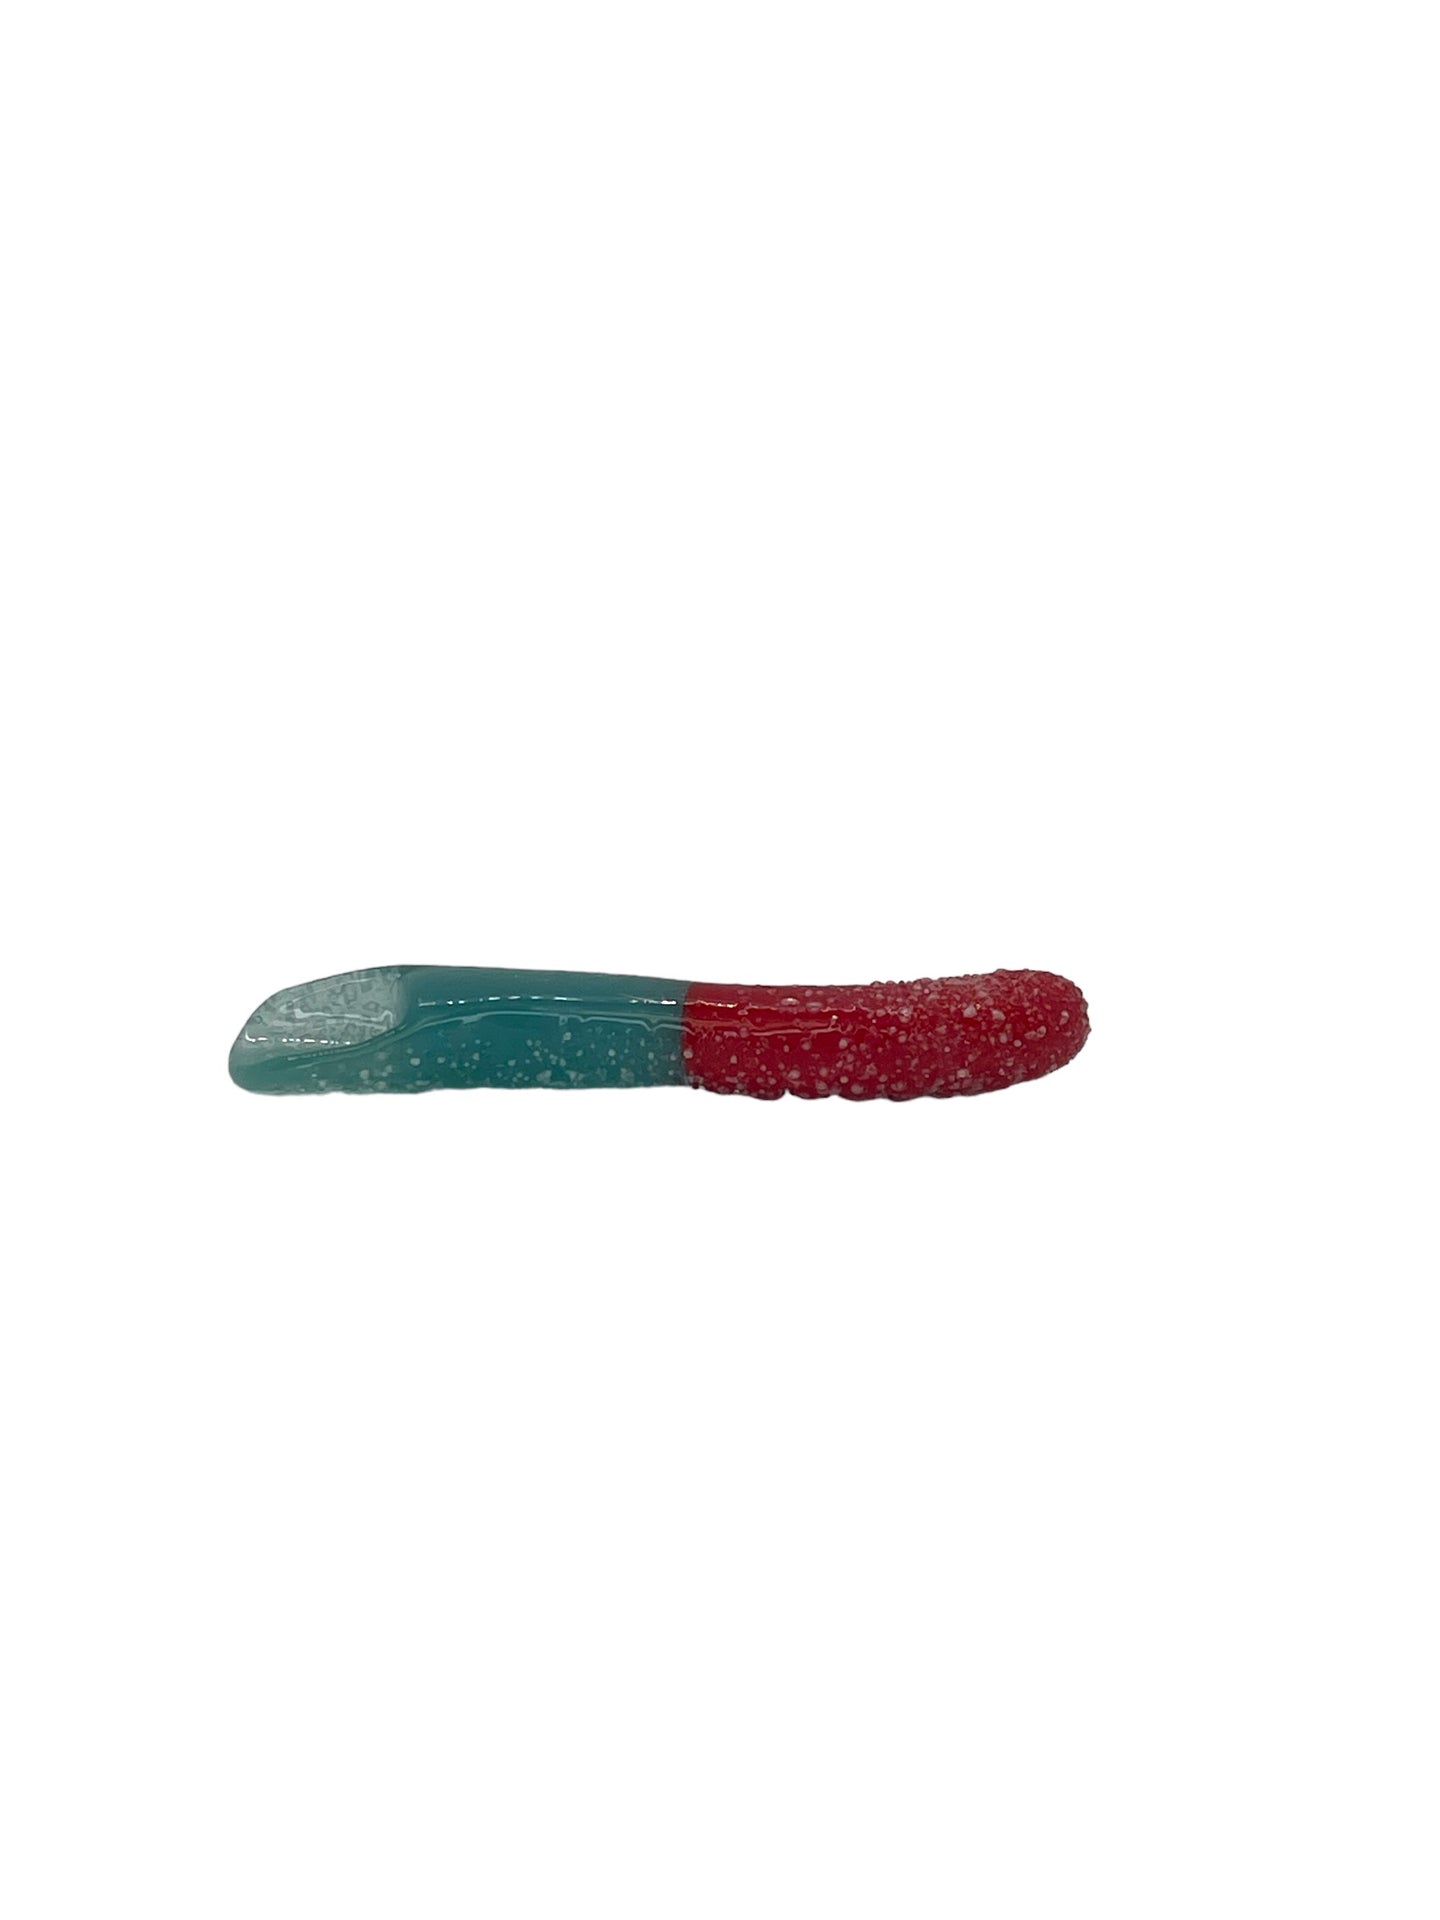 Gummy Worm Dab Tool